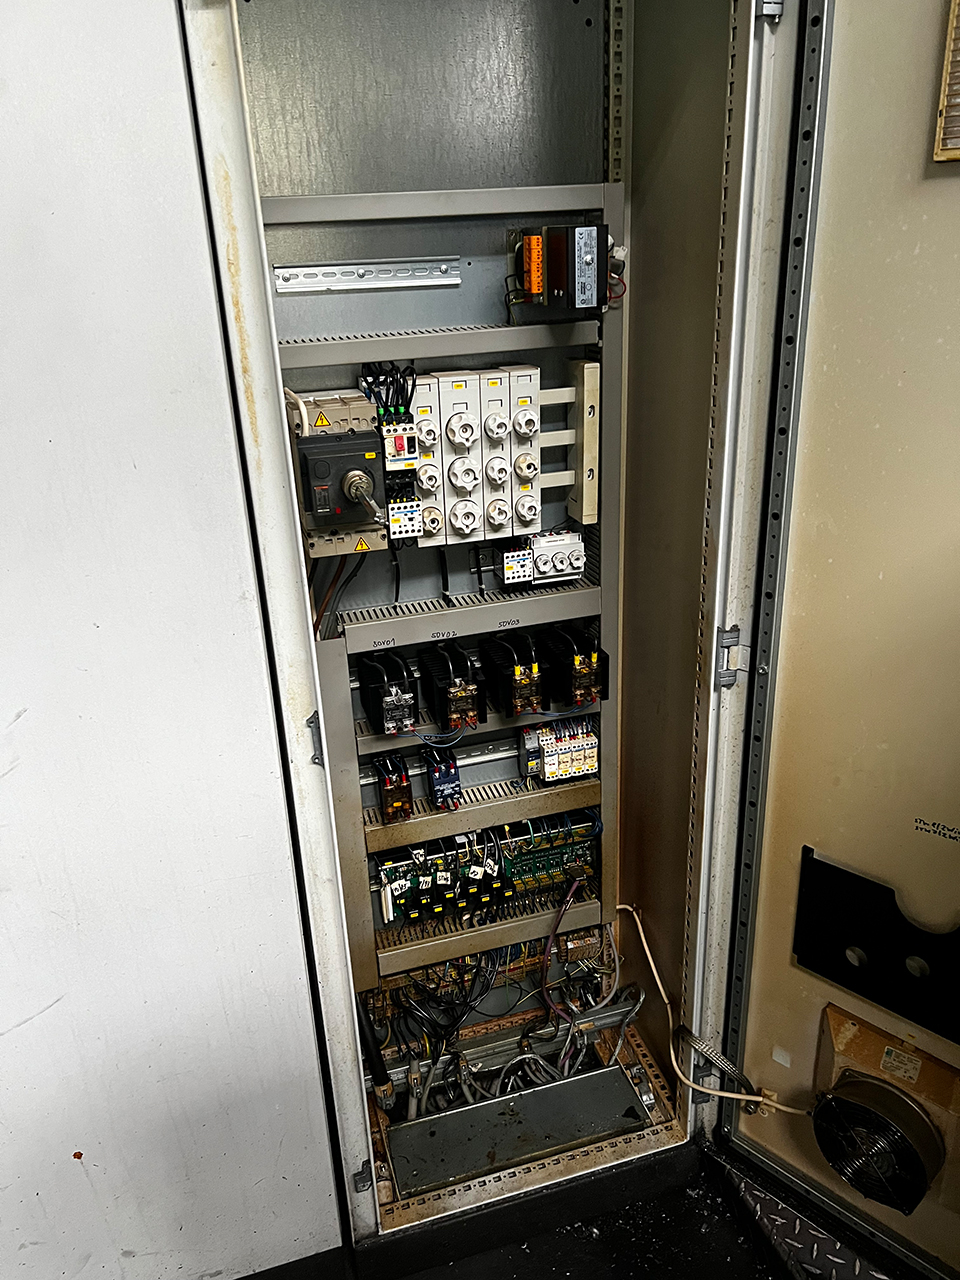 Frech DAW 80 F Warmkammer Druckgießmaschine WK1466, gebraucht